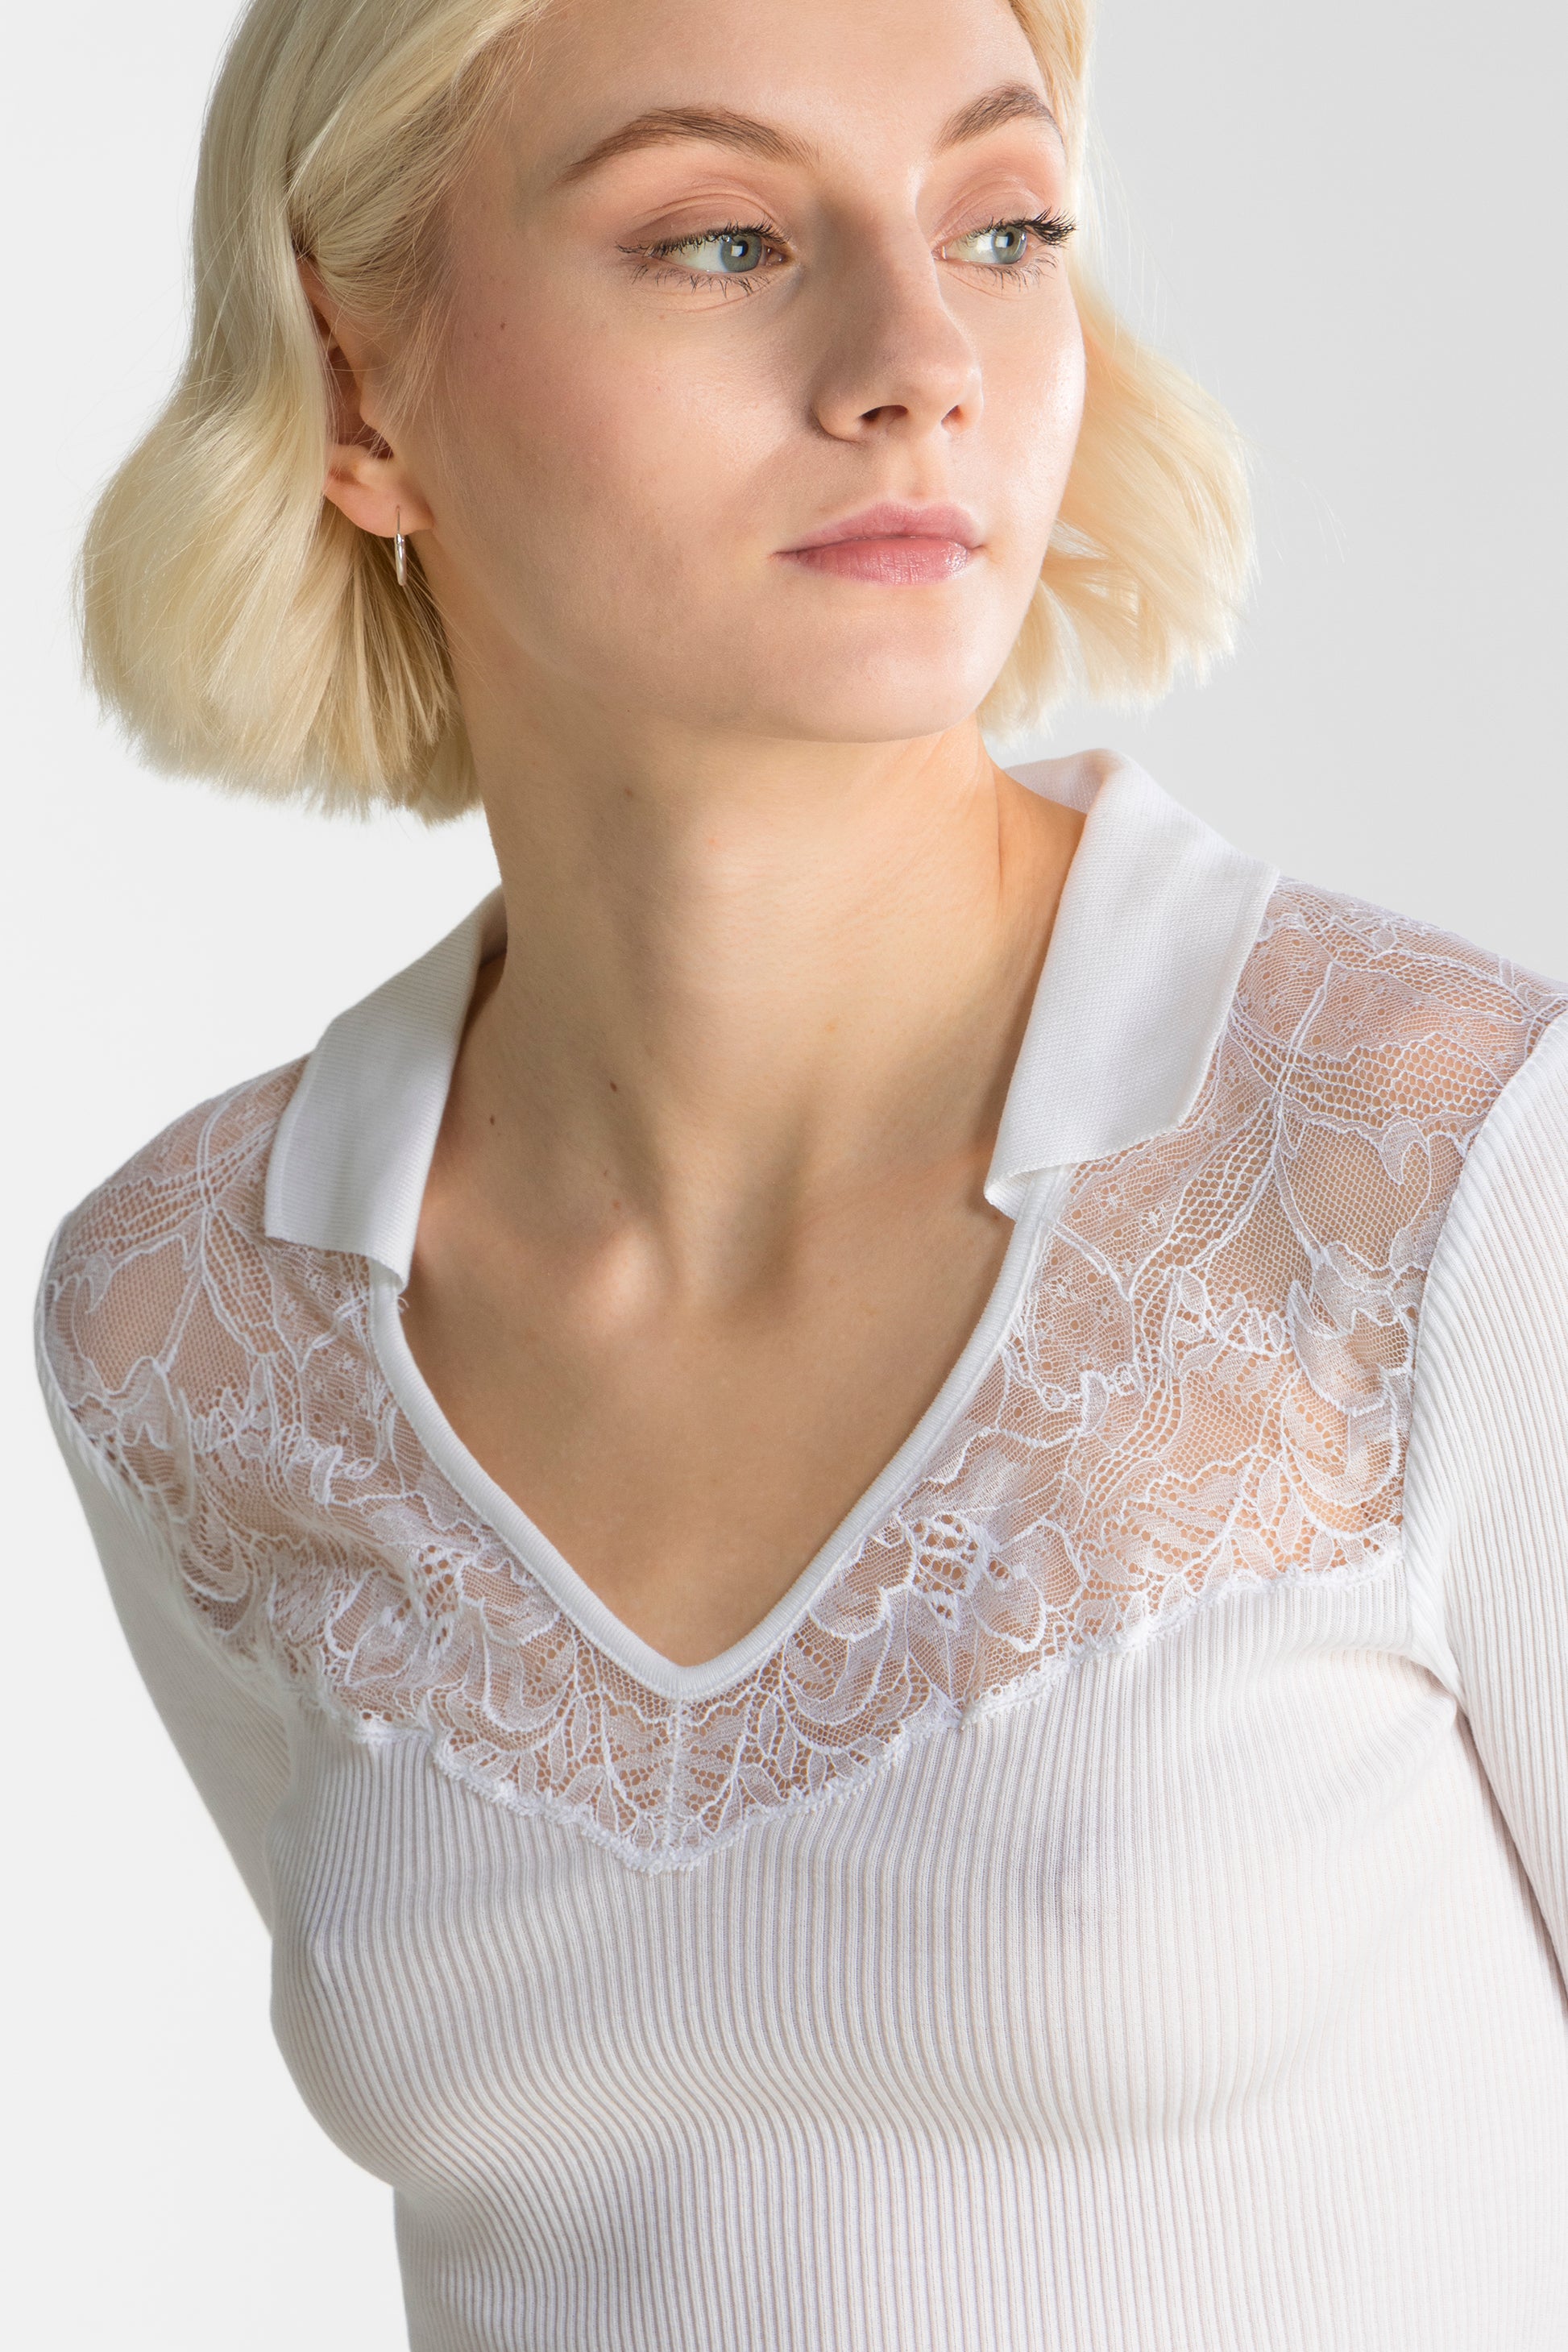 T-shirt Woman Cotton 7126 - Oscalito